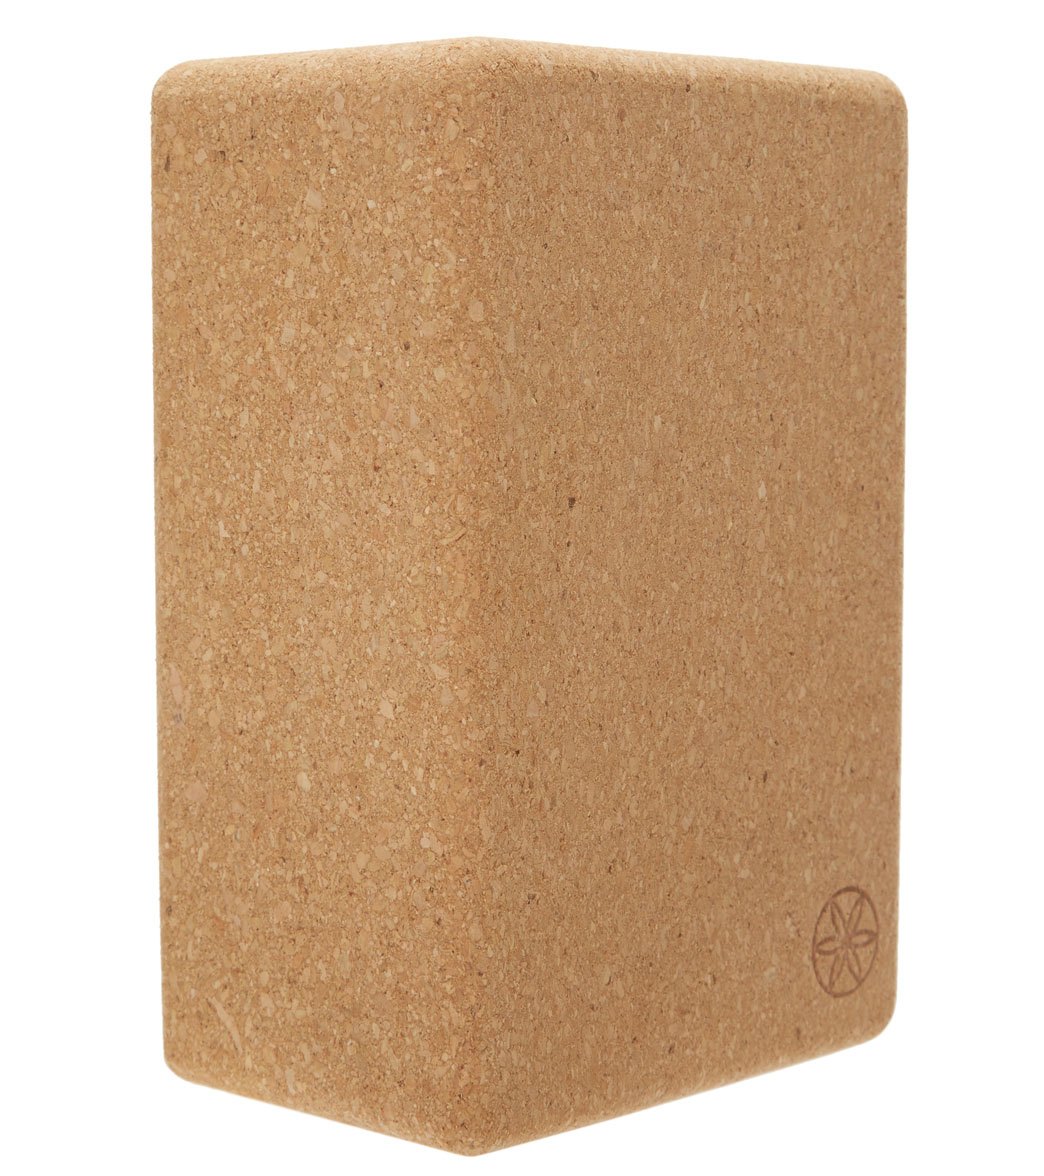 Gaiam Natural Cork Yoga Block Standard